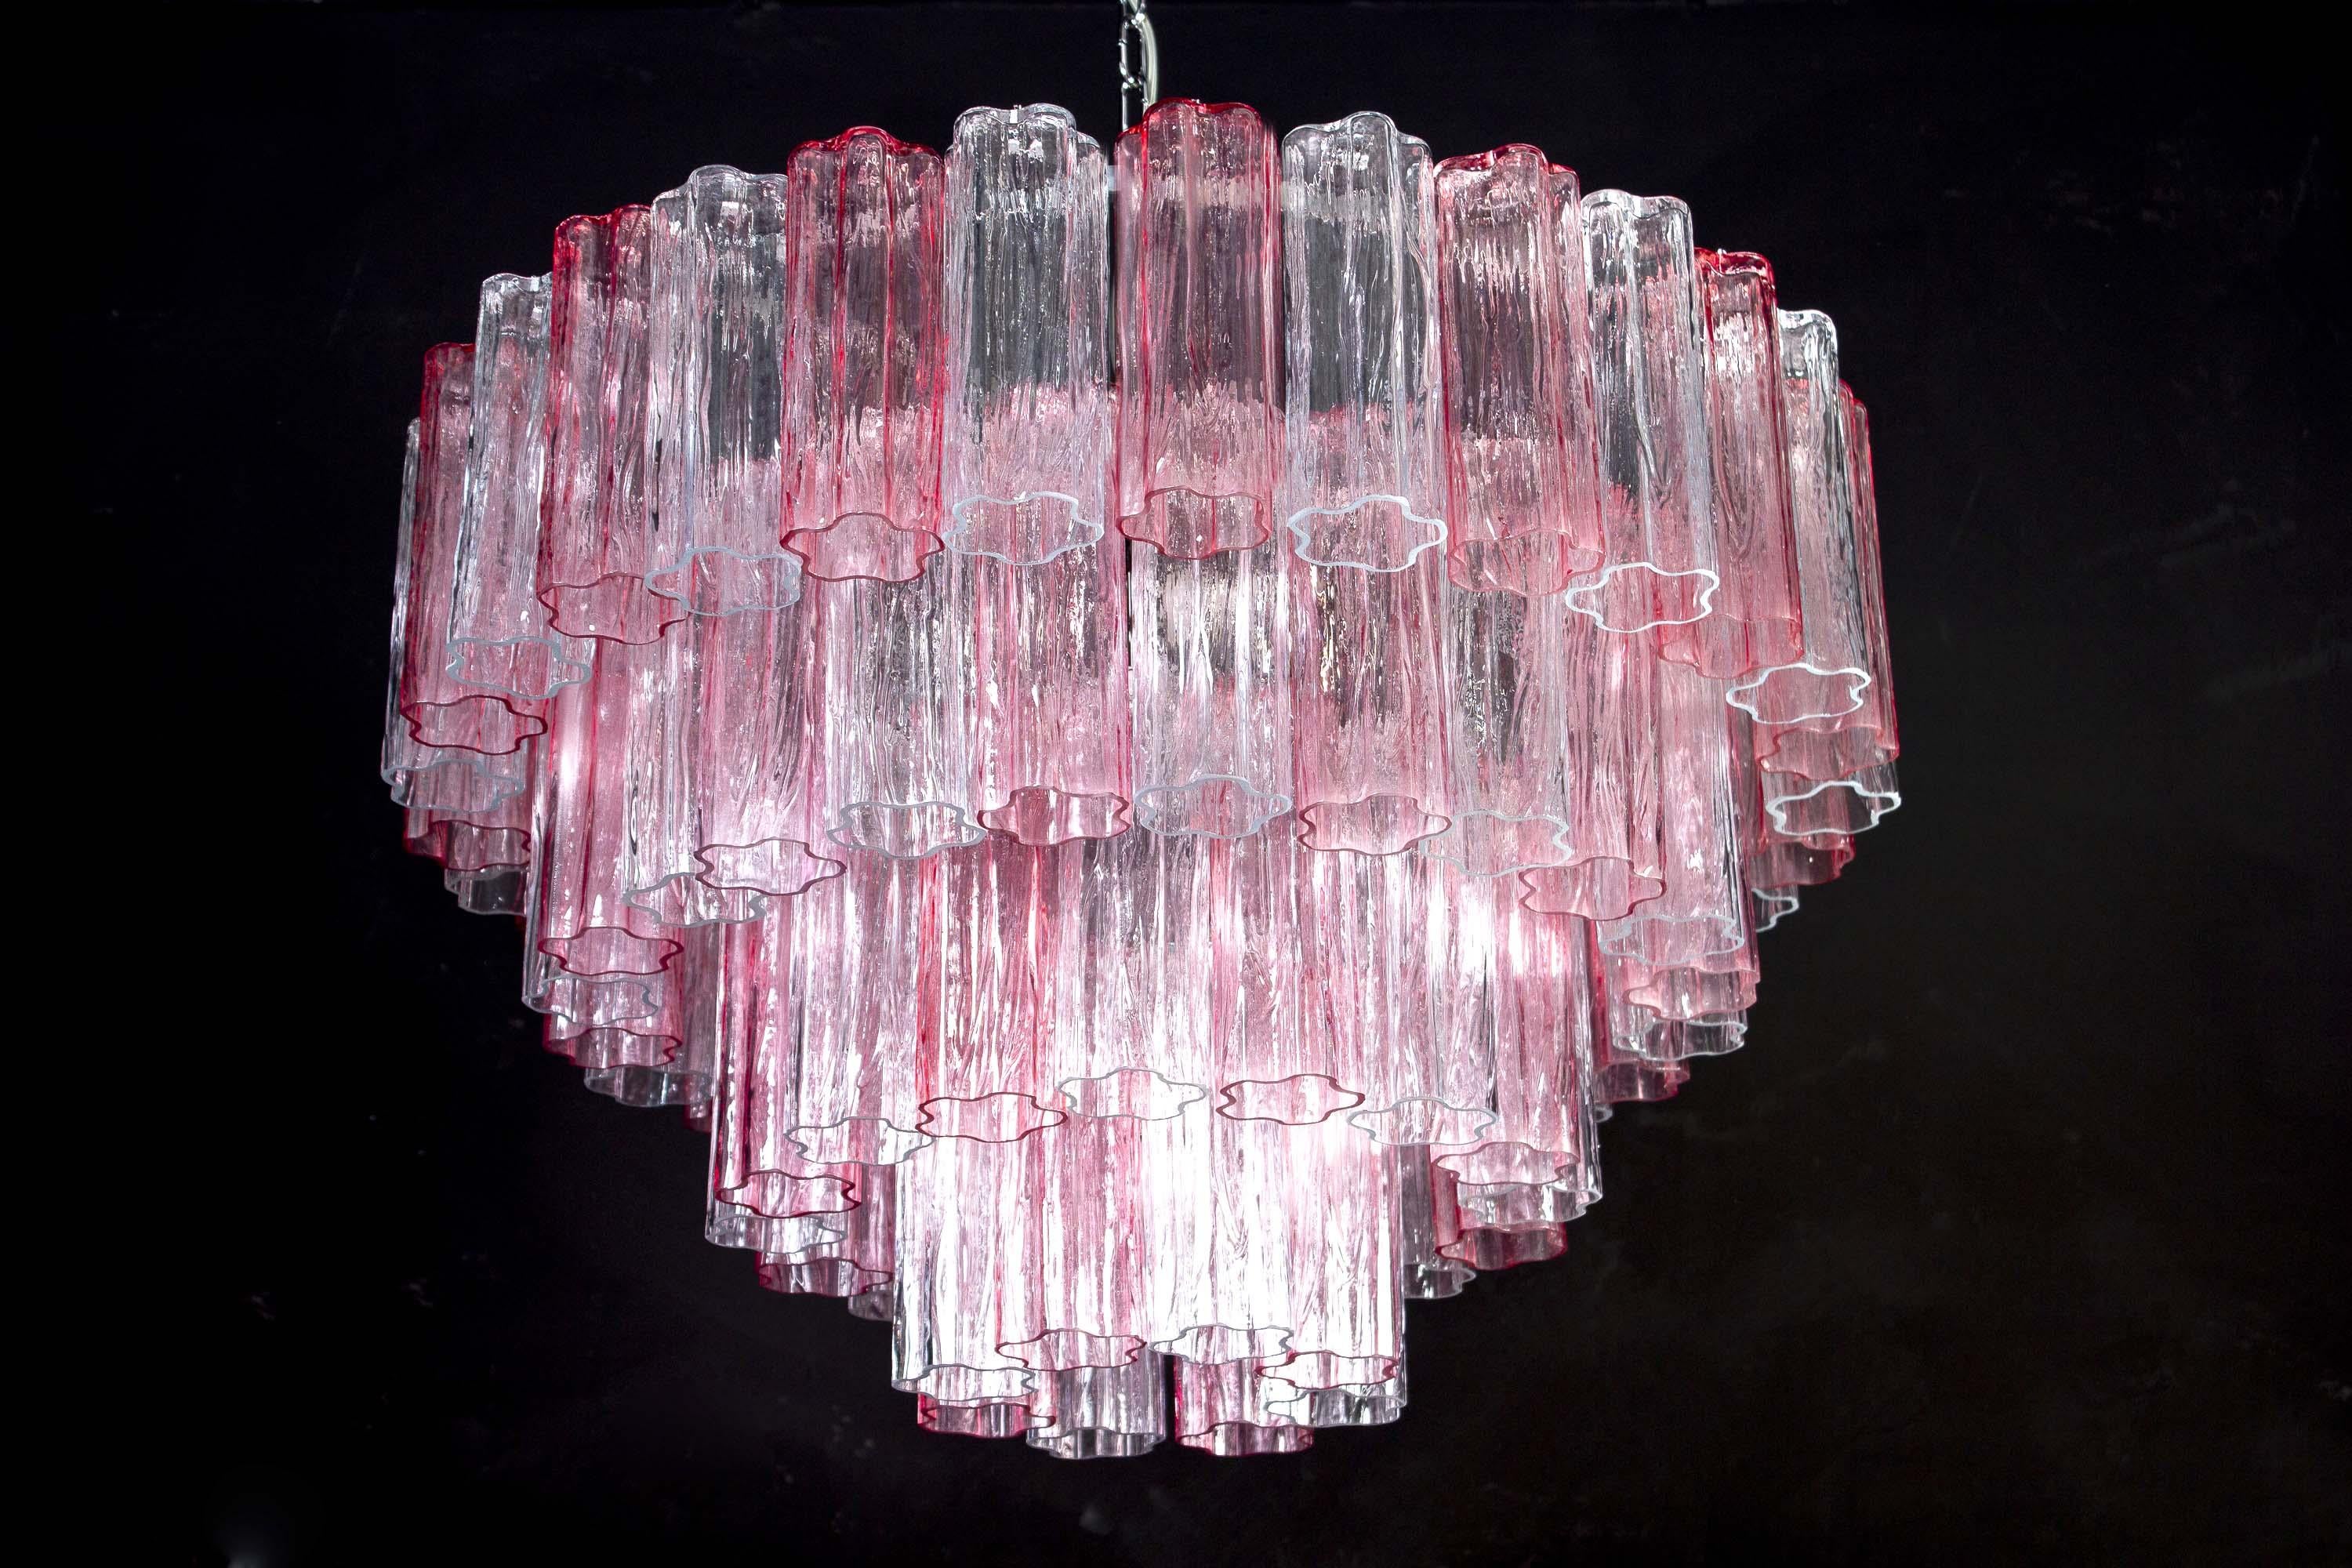 Ce lustre extraordinaire est composé de 78 verres de Murano 'Tronchi' de couleur rose et glace
par 20 cm de haut.


 